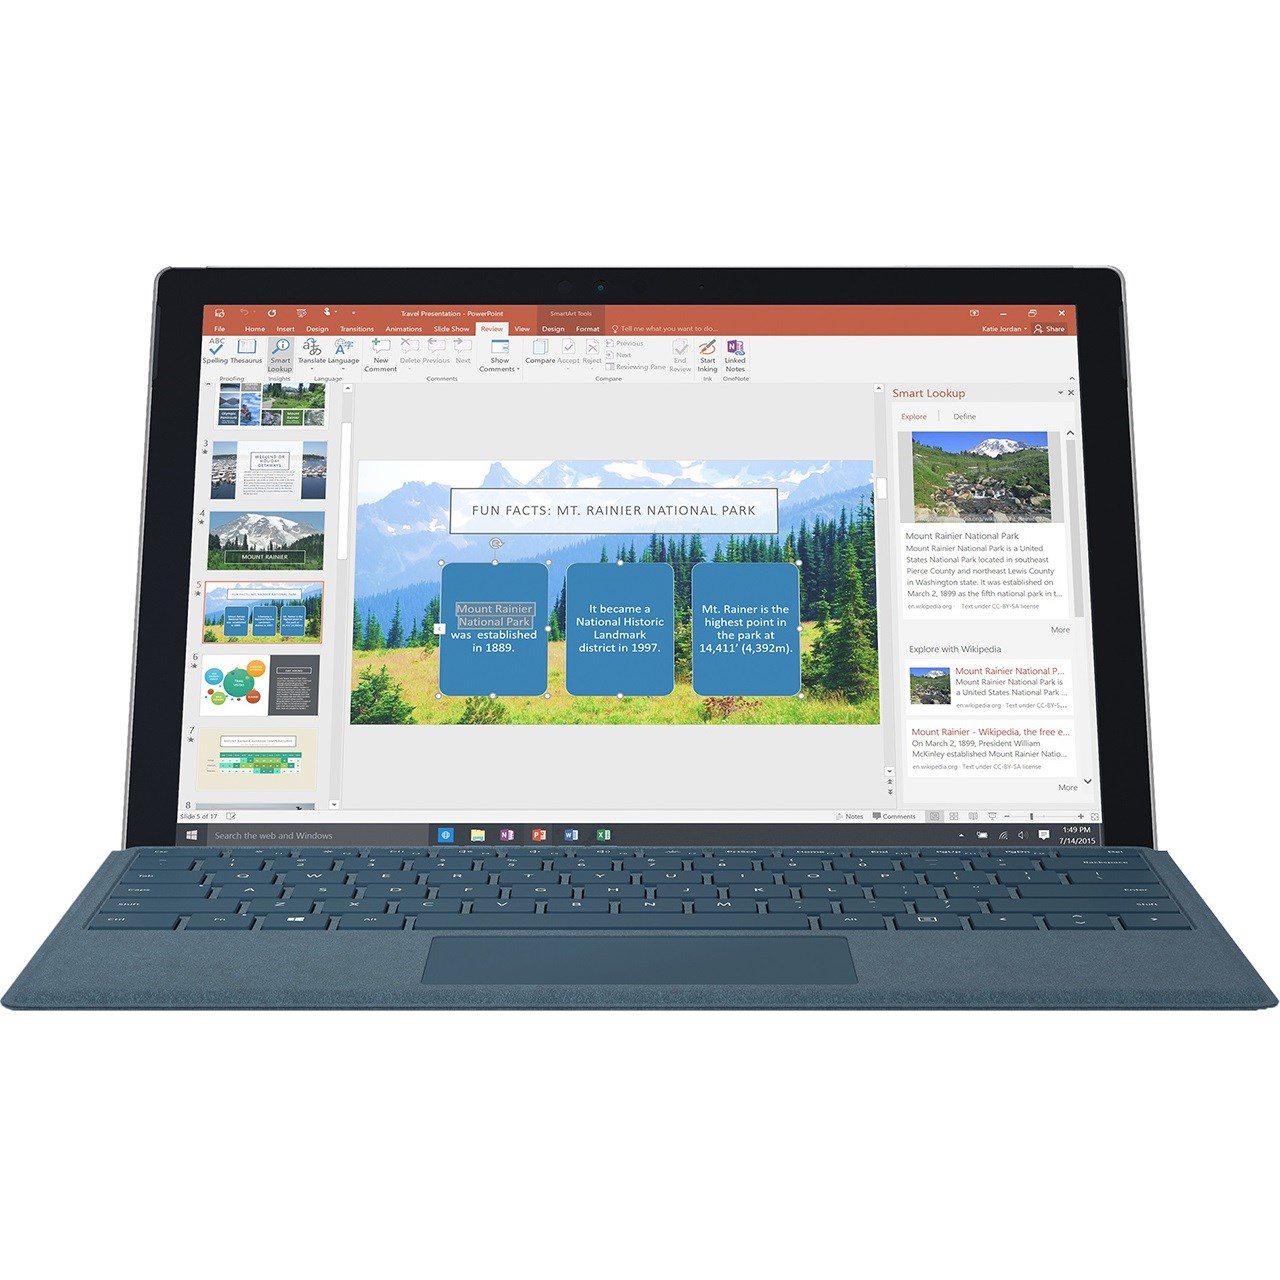 تبلت مایکروسافت مدل Surface Pro 2017 - F به همراه کیبورد سیگنیچر رنگ آبی کبالت و کیف چرم صنوبر  - ظرفیت 1 ترابایت